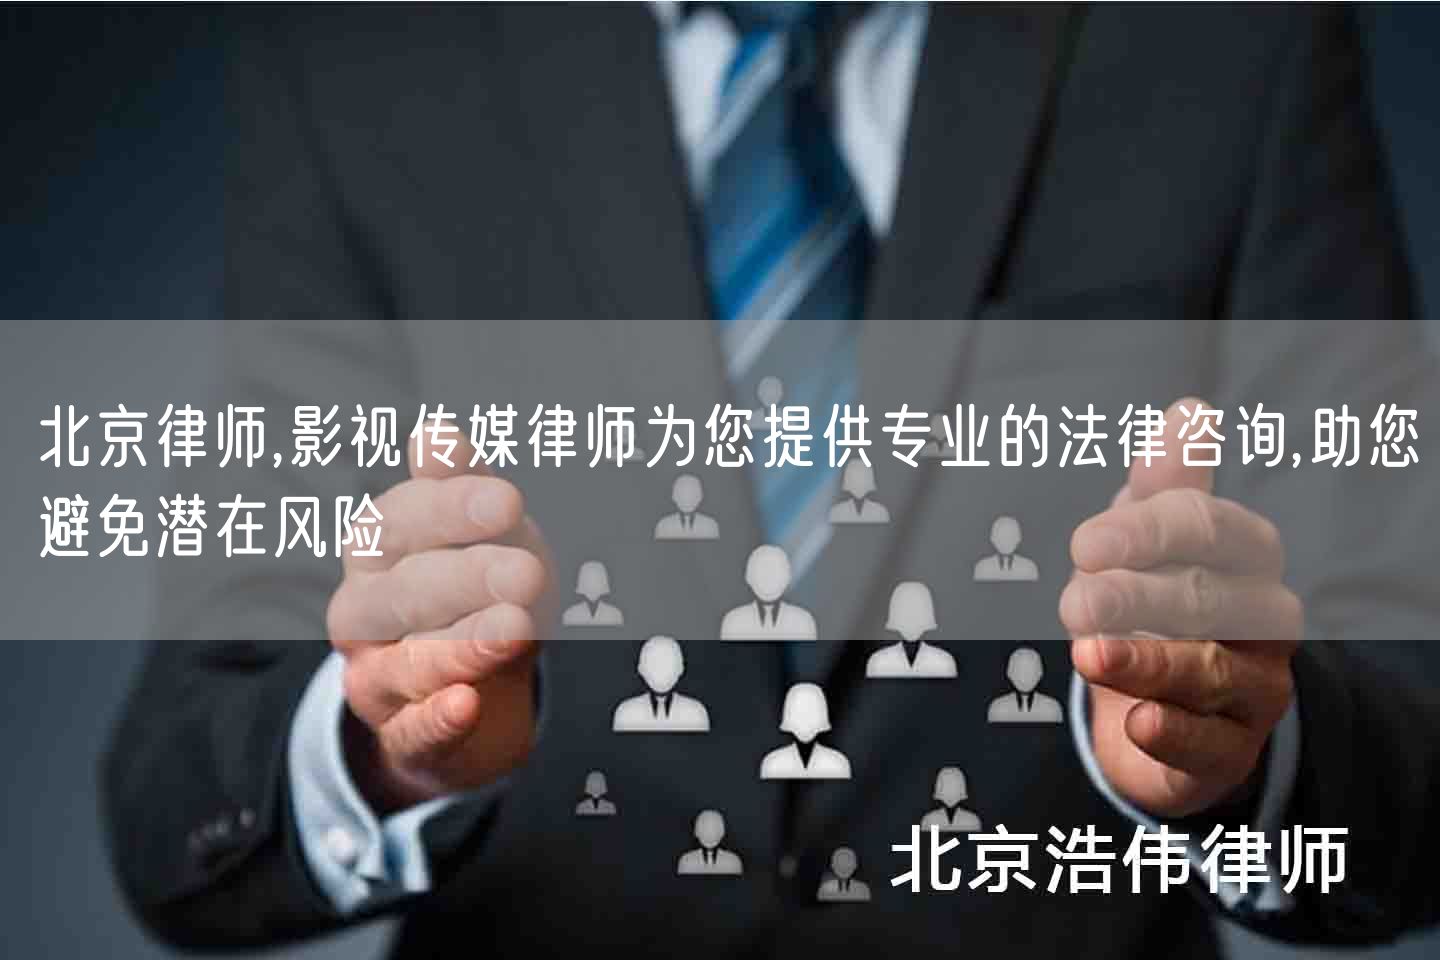 北京律师,影视传媒律师为您提供专业的法律咨询,助您避免潜在风险